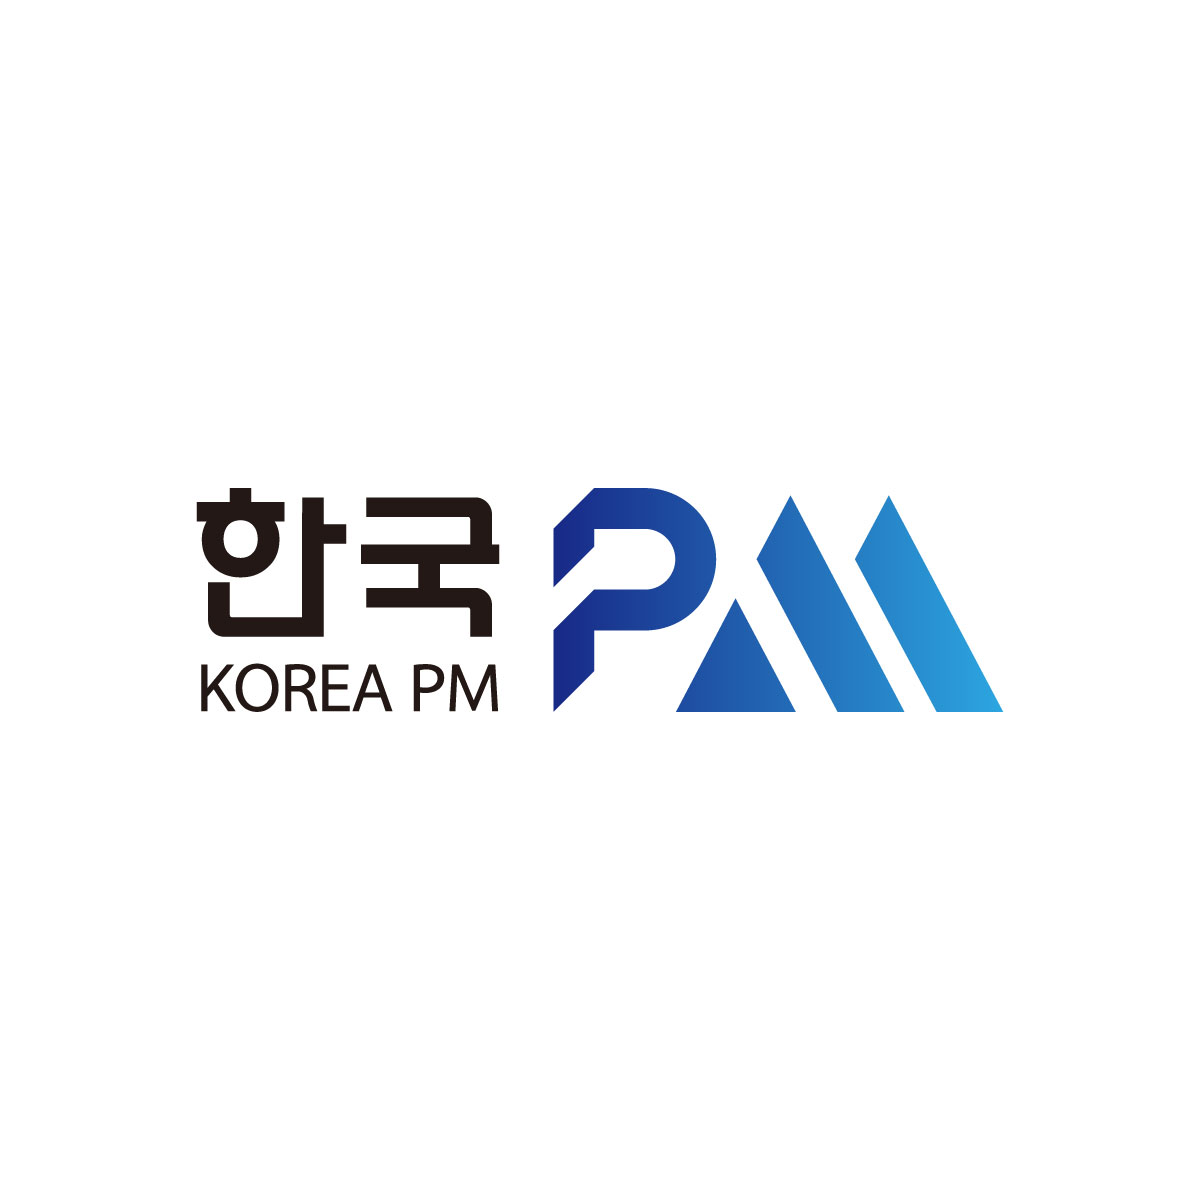 한국PM 로고 제작